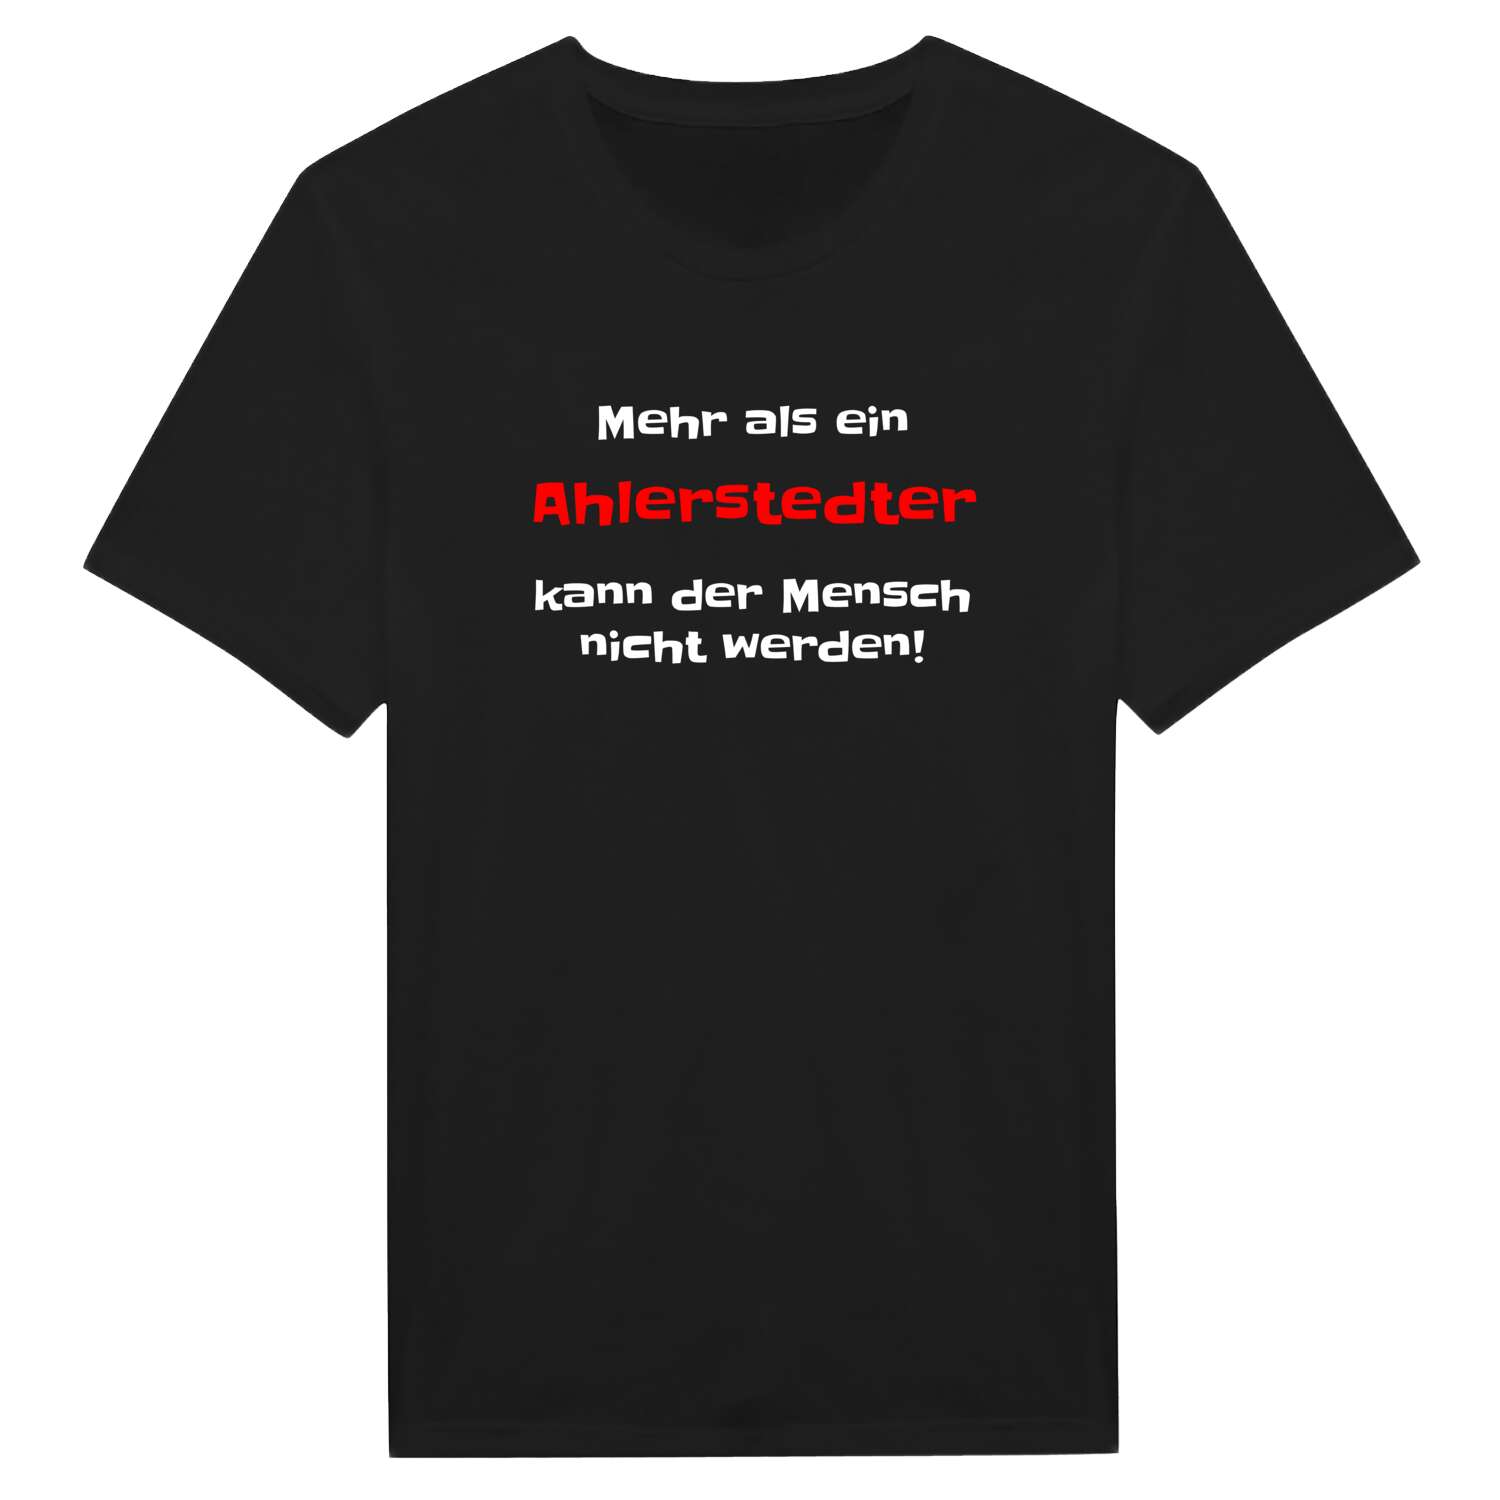 Ahlerstedt T-Shirt »Mehr als ein«